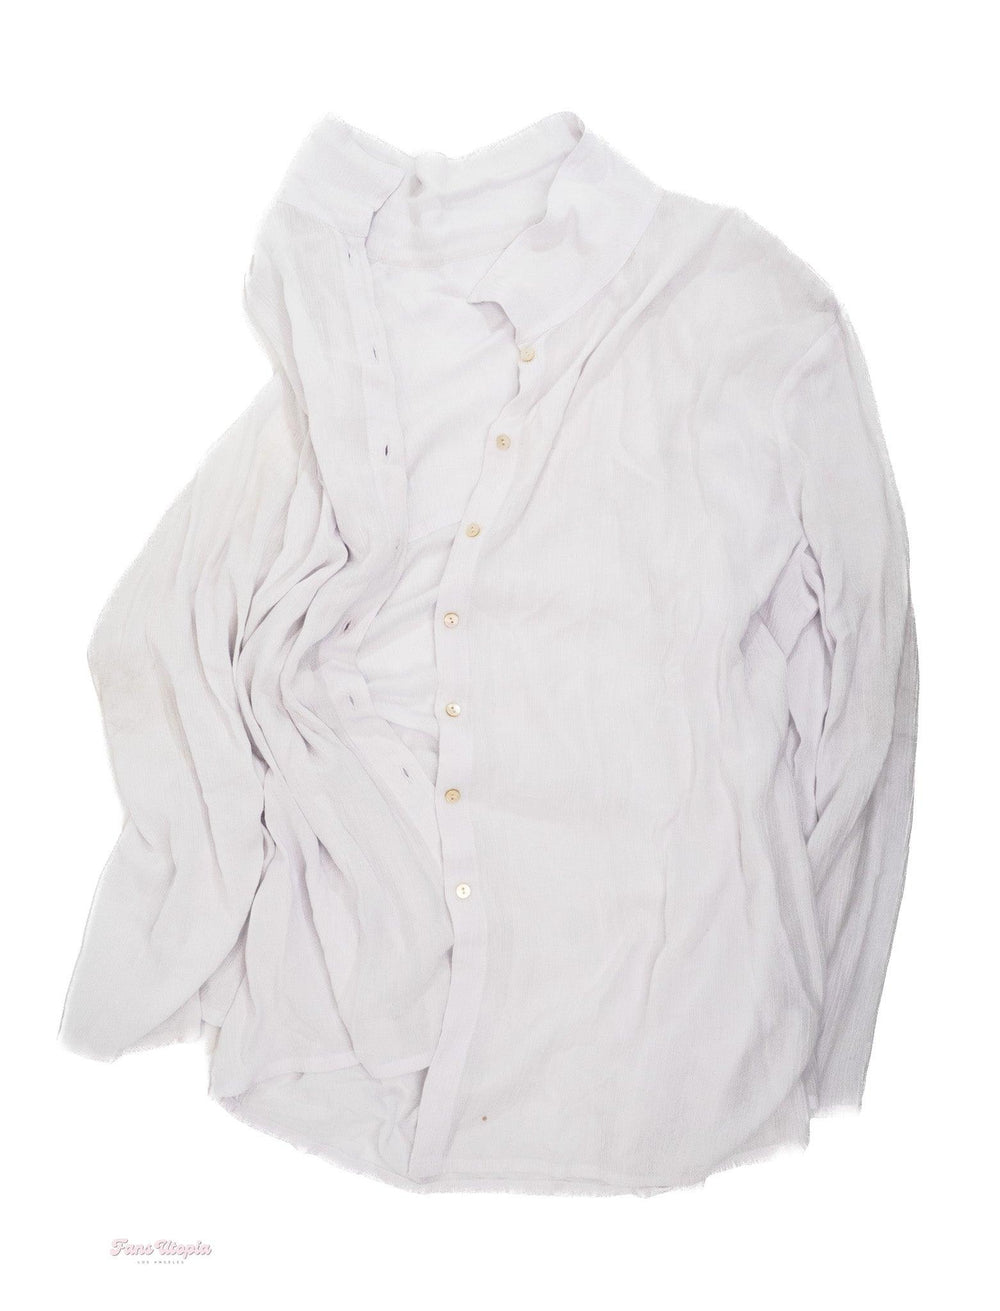 Mia Malkova White Dress Shirt - FANS UTOPIA